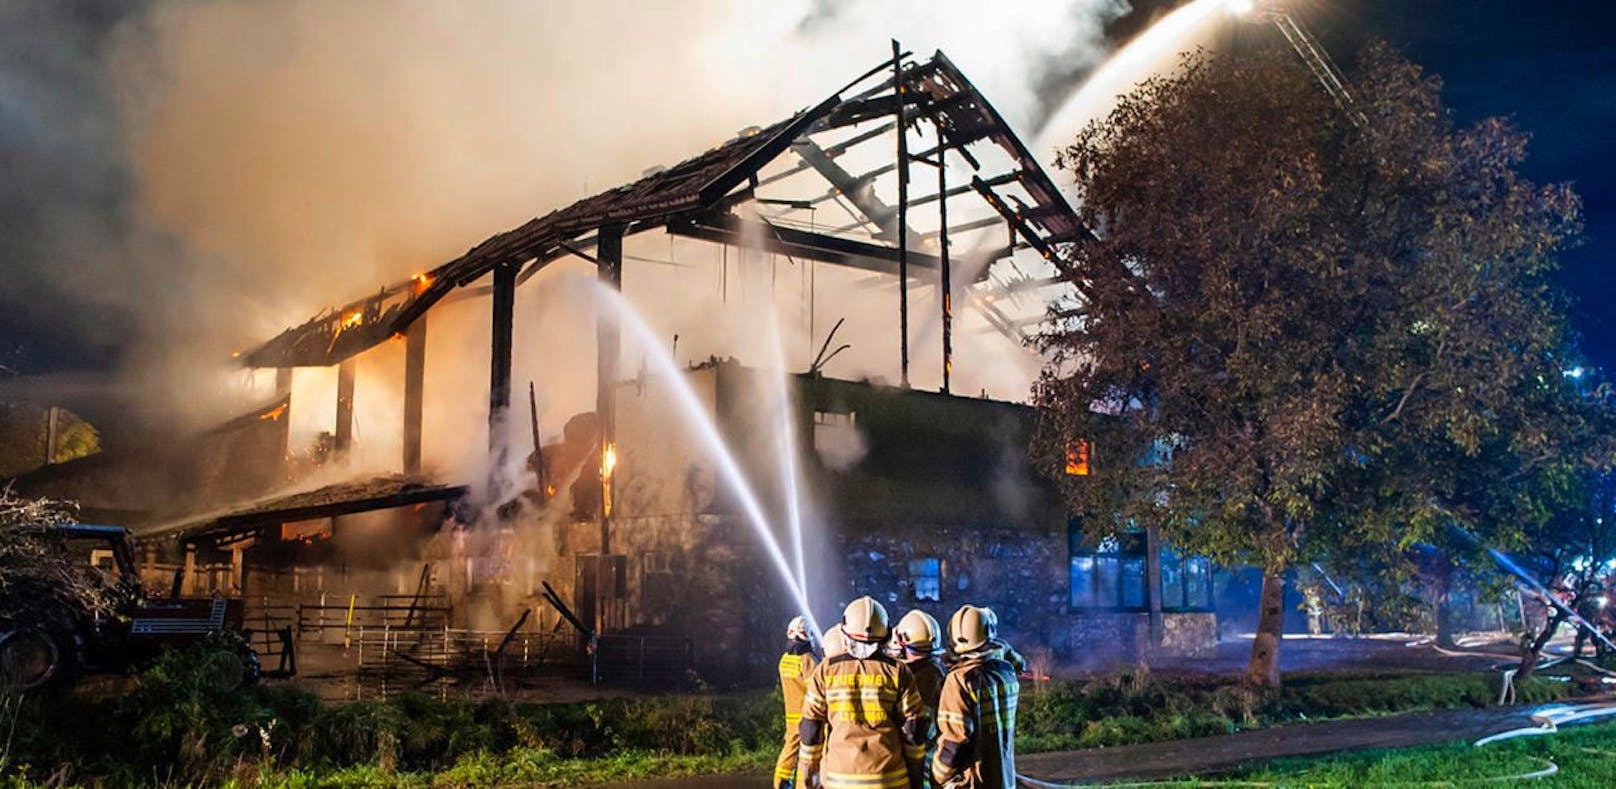 150 Einsatzkräfte löschen Brand auf Bauernhof